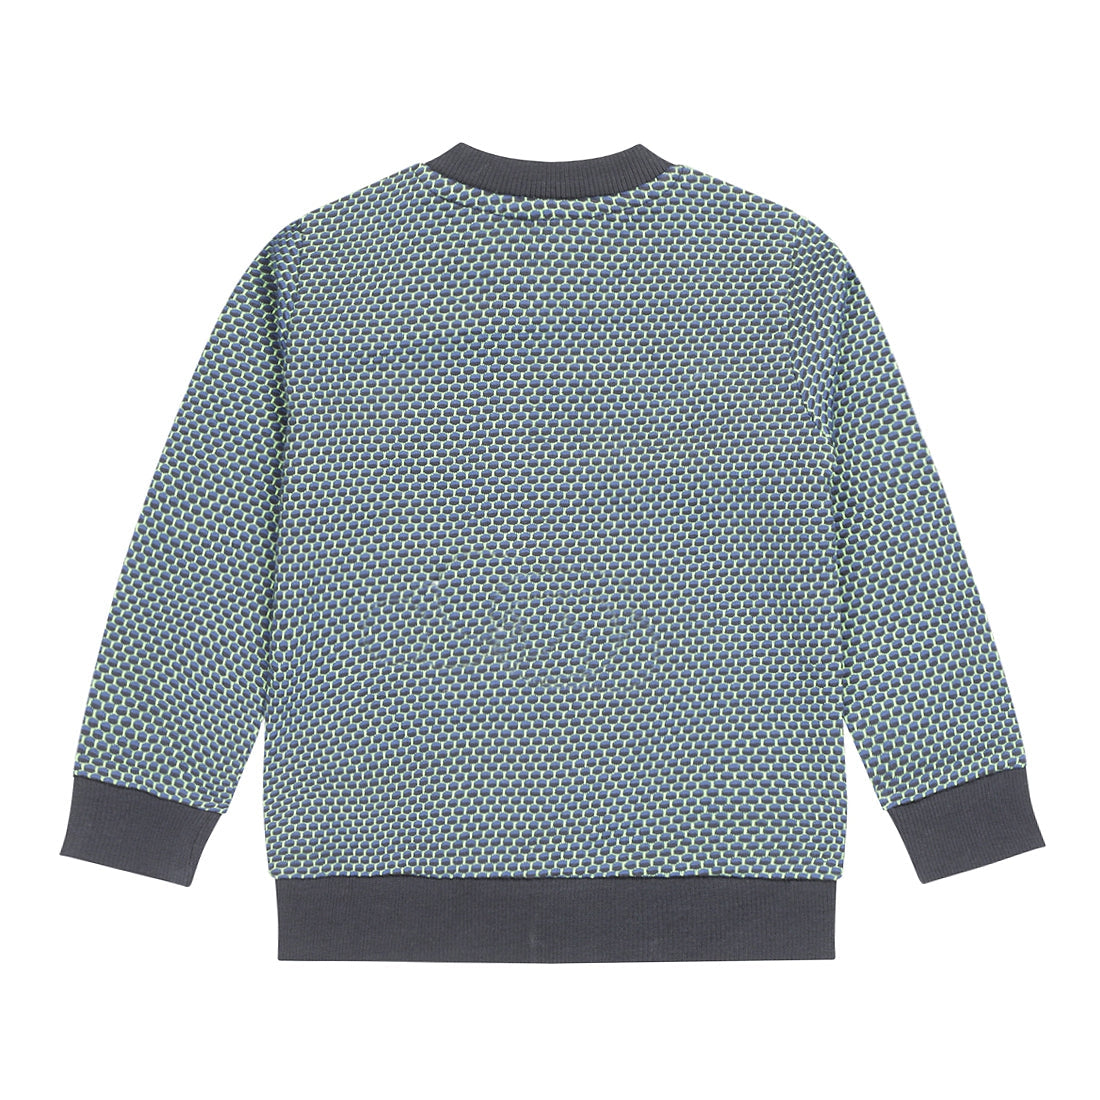 Jongens Sweater ls with crewneck van Koko Noko in de kleur Dark blue in maat 128.